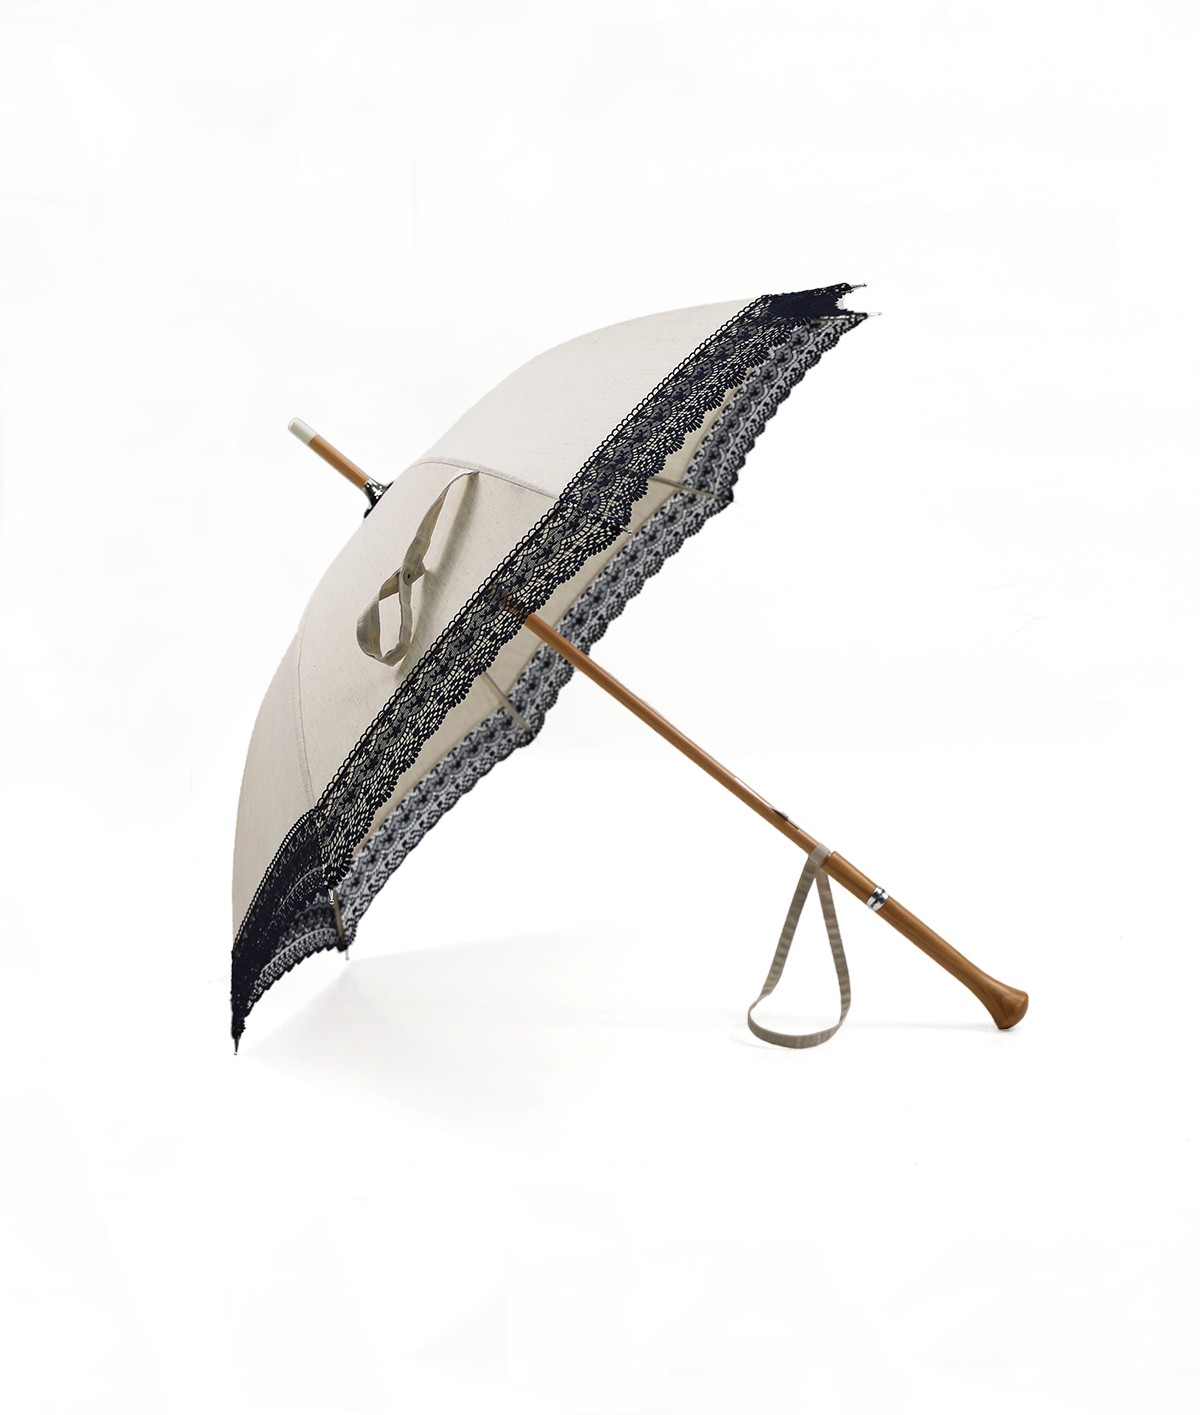 → Ombrelle "Demoiselle" à Dentelle - Made in France par le leader des fabricants de parapluies français Maison Pierre Vaux